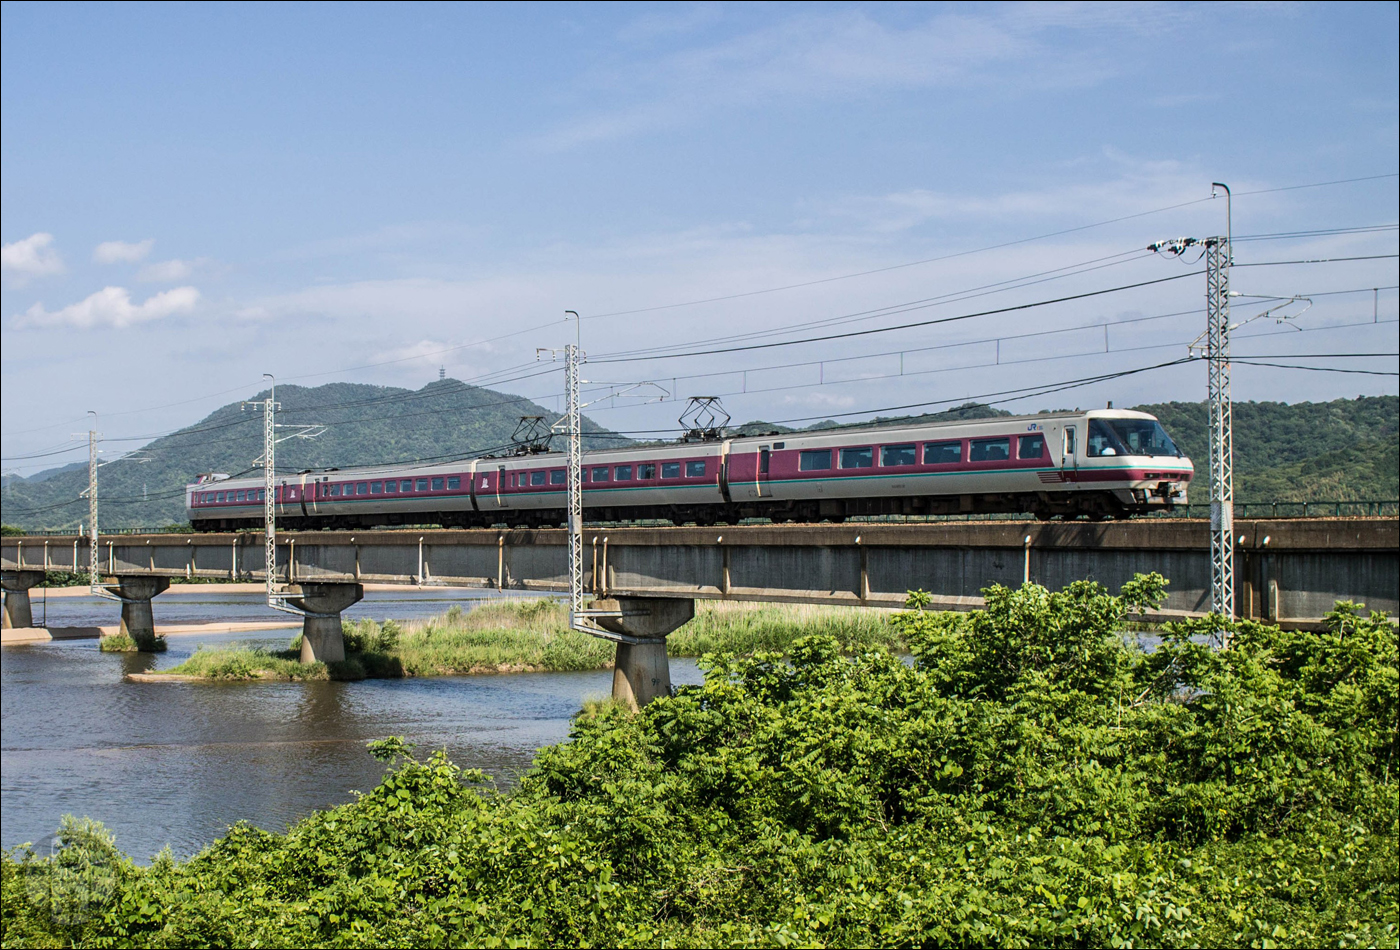 A JR West által üzemeltetett 381-es sorozatú motorvonatokkal naponta találkozhatunk a Hakubi és Sanin vonalakon át, Okayama és Izumoshi városai között közlekedő „Yakumo” járatokként.